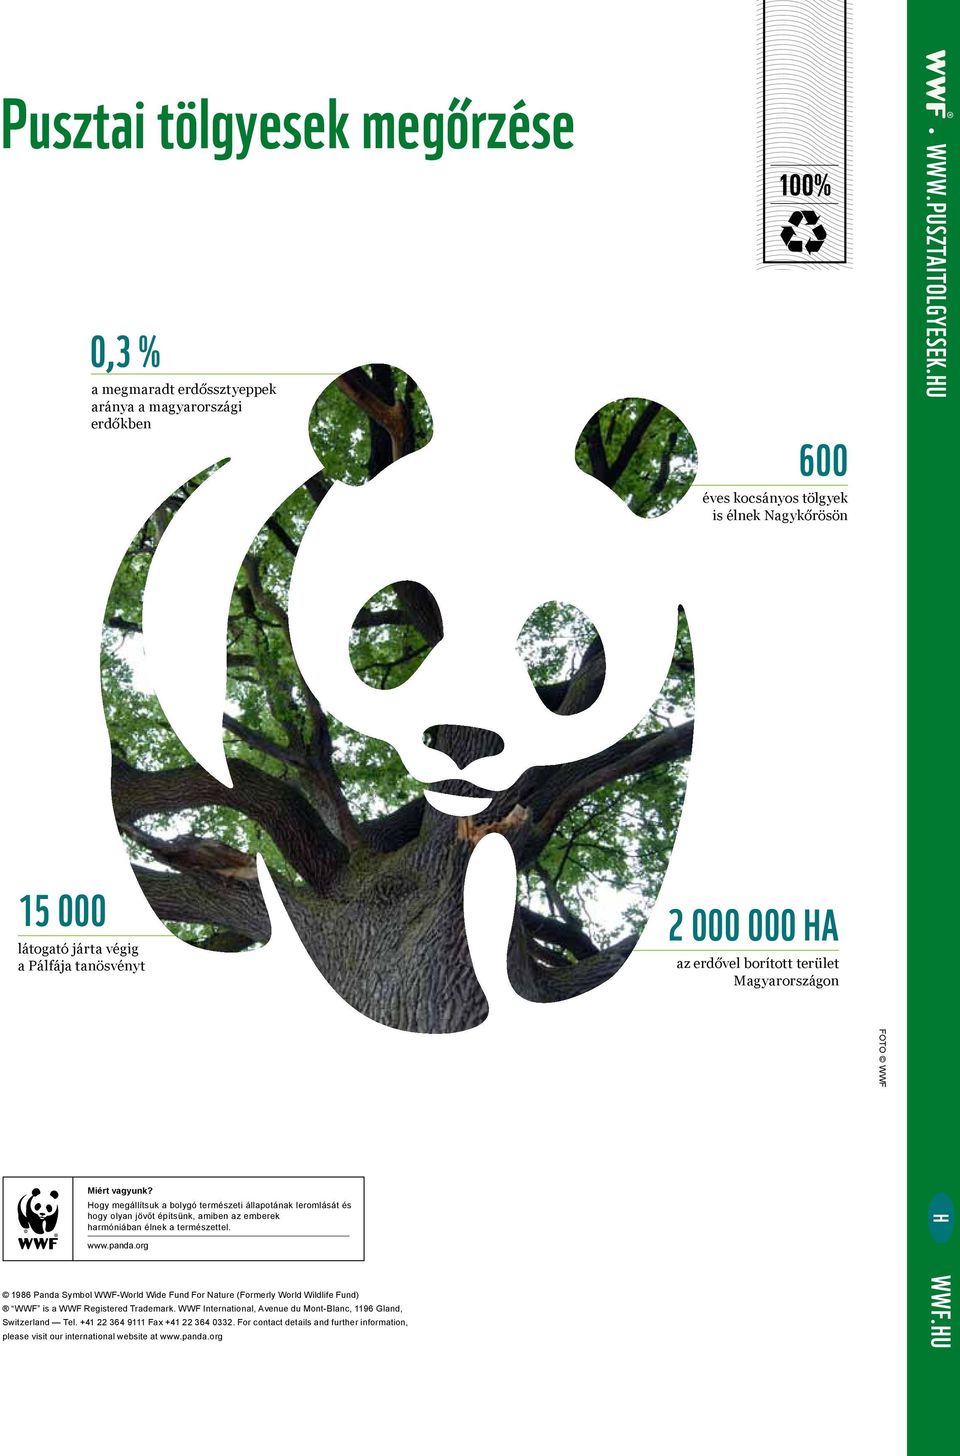 Hogy megállítsuk a bolygó természeti állapotának leromlását és hogy olyan jövőt építsünk, amiben az emberek harmóniában élnek a természettel. www.panda.